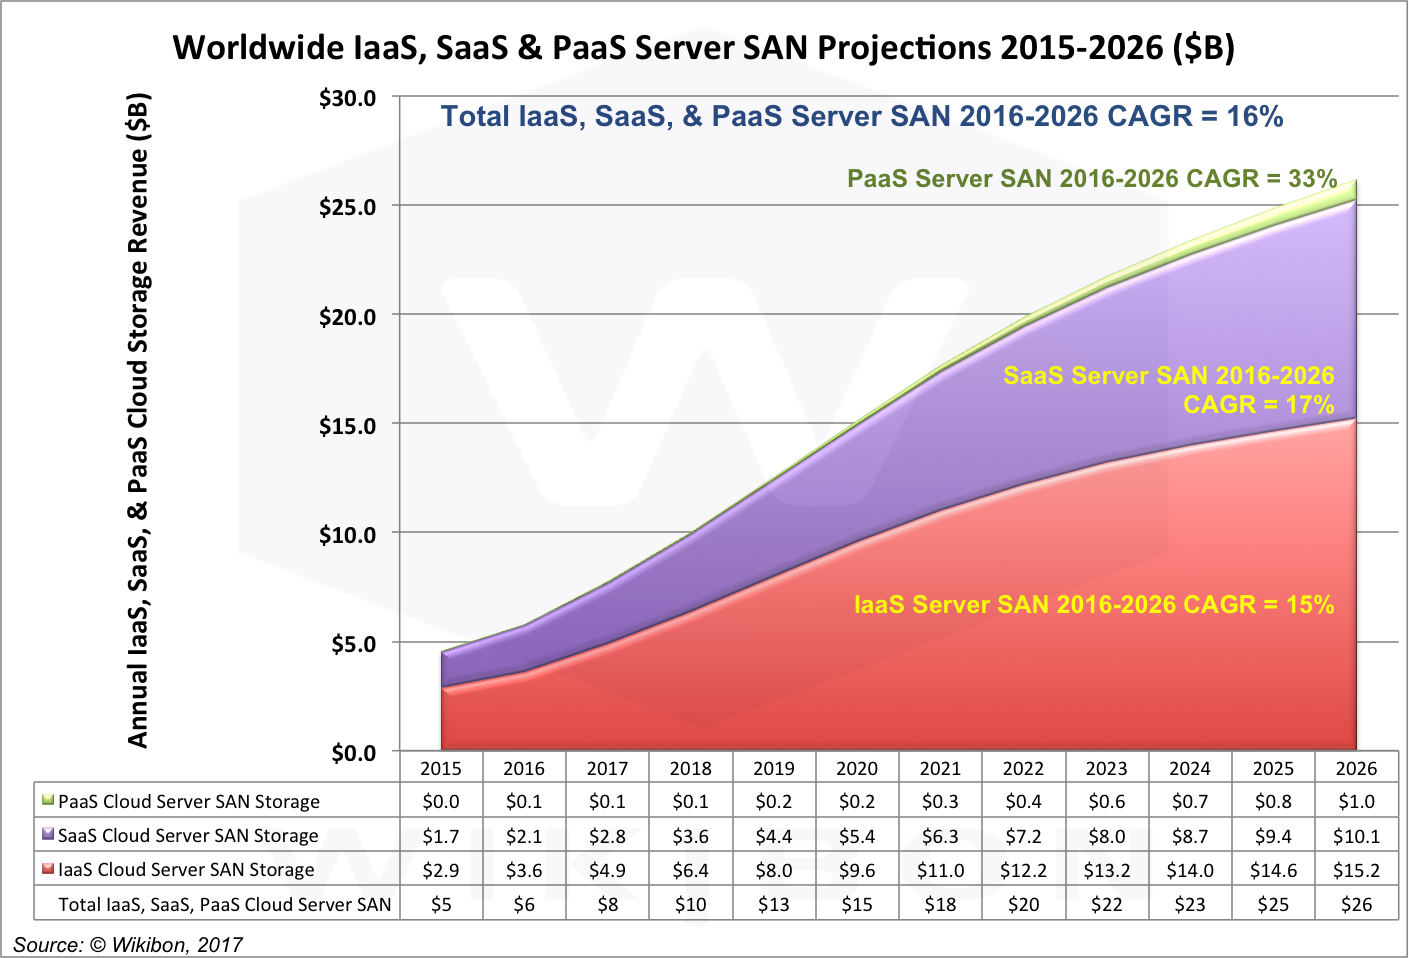 IaaS, SaaS, & PaaS Cloud Server SAN Projections